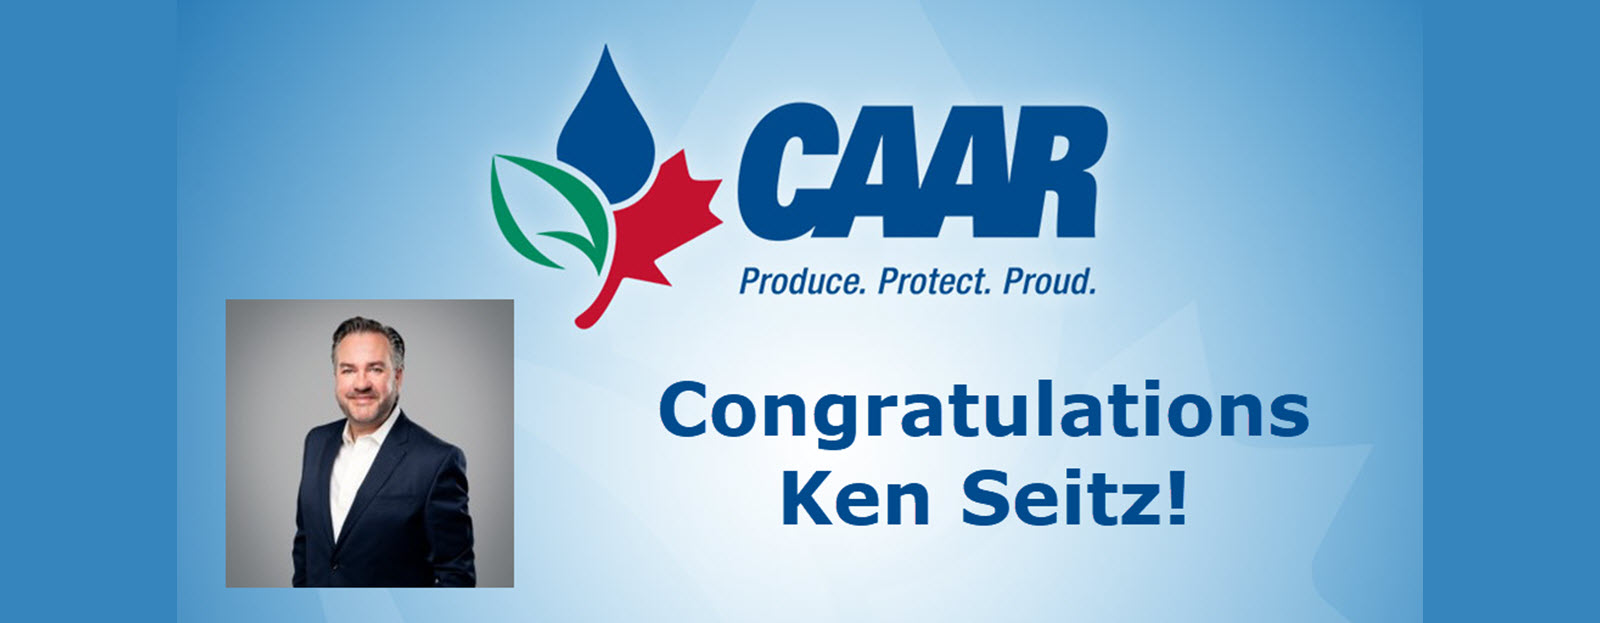 CAAR Congratulates Ken Seitz